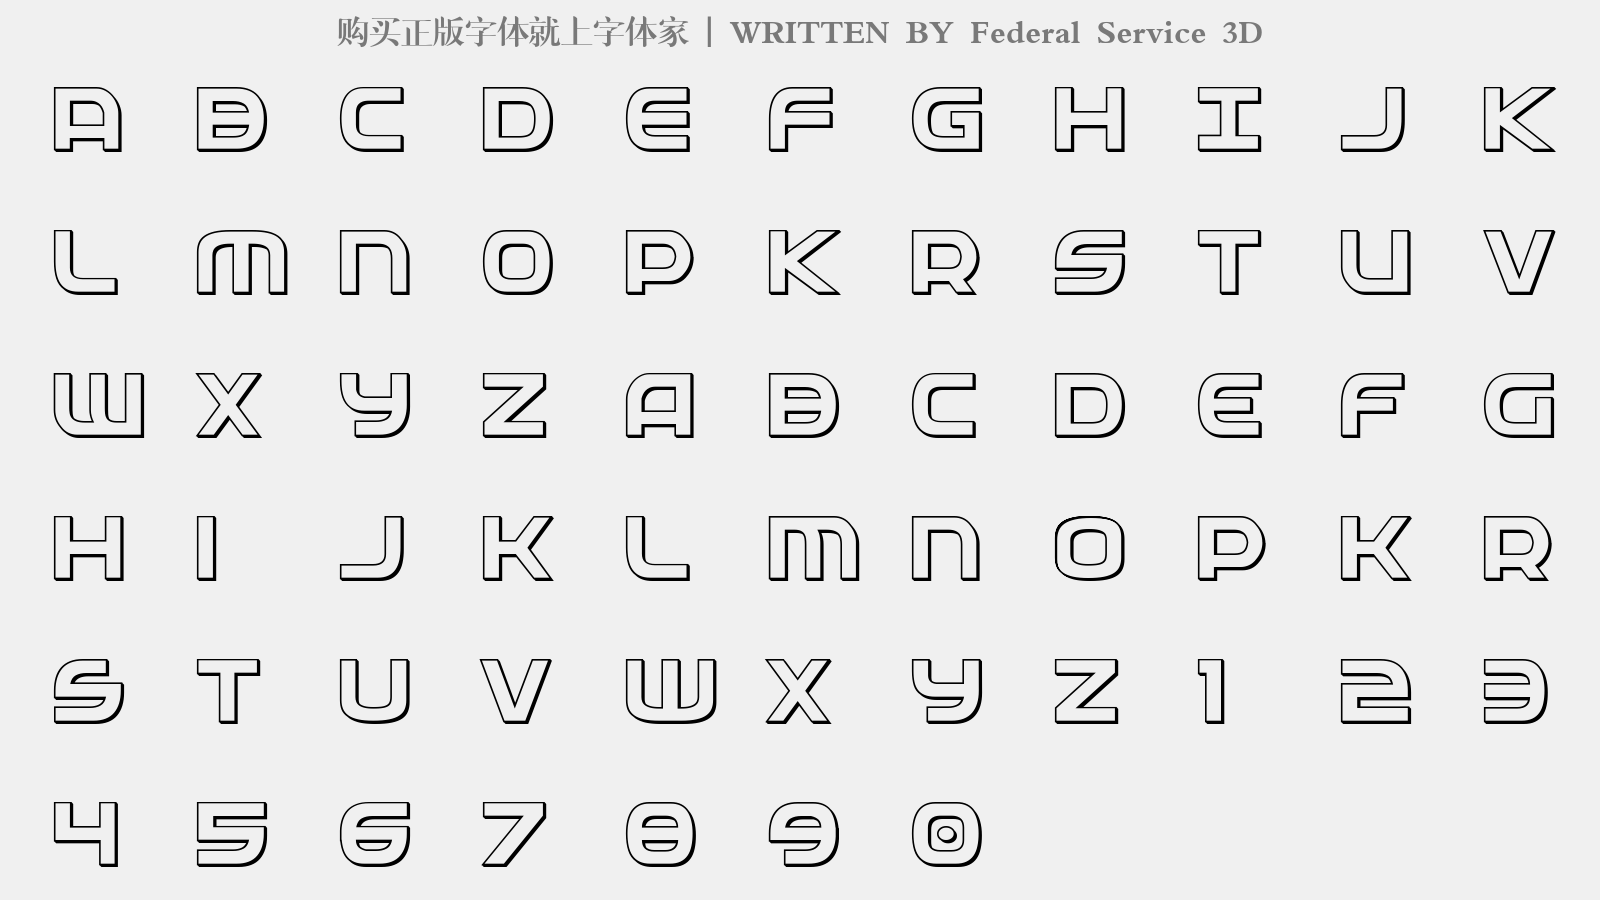 Federal Service 3D - 大写字母/小写字母/数字